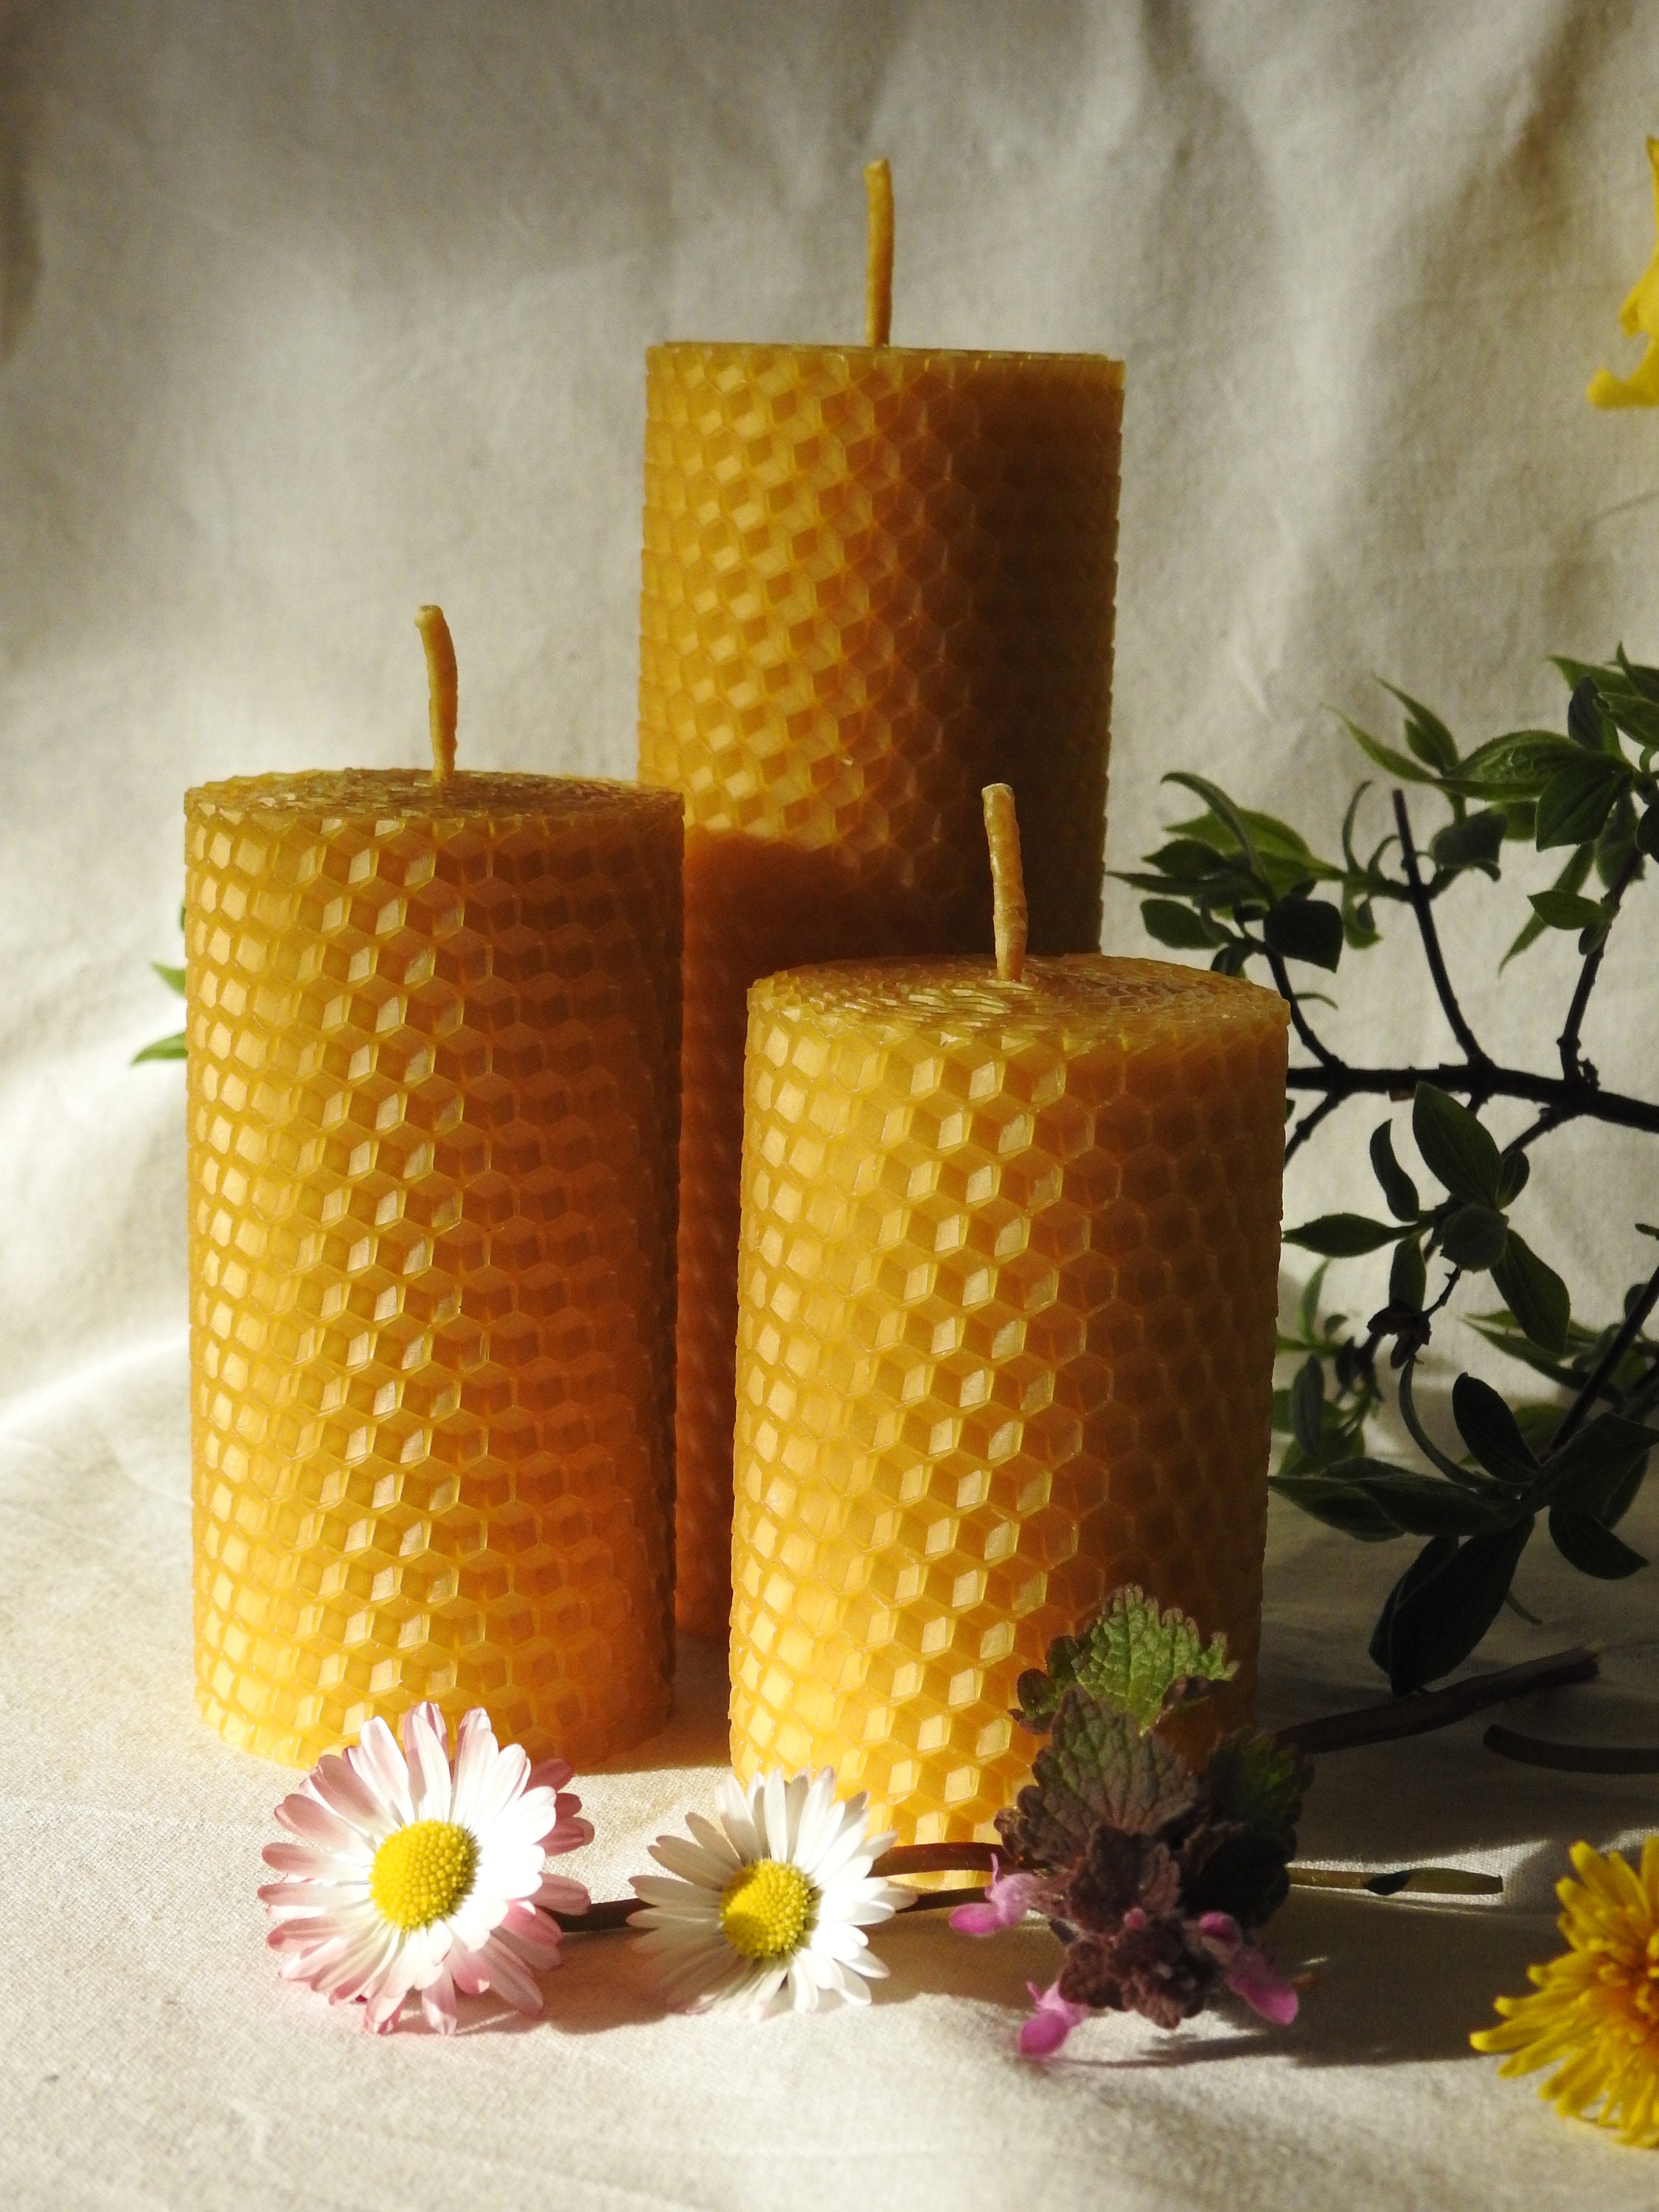 Velas de cera de abeja natural Ecológicas Elegantes Decorativas.  Elaboración artesanal saludables fragantes. 100% natural pabilo de algodón.  Paquete de 3 velas de 7.11 cm (2.8”) x 5.08 cm (2”) c/u 